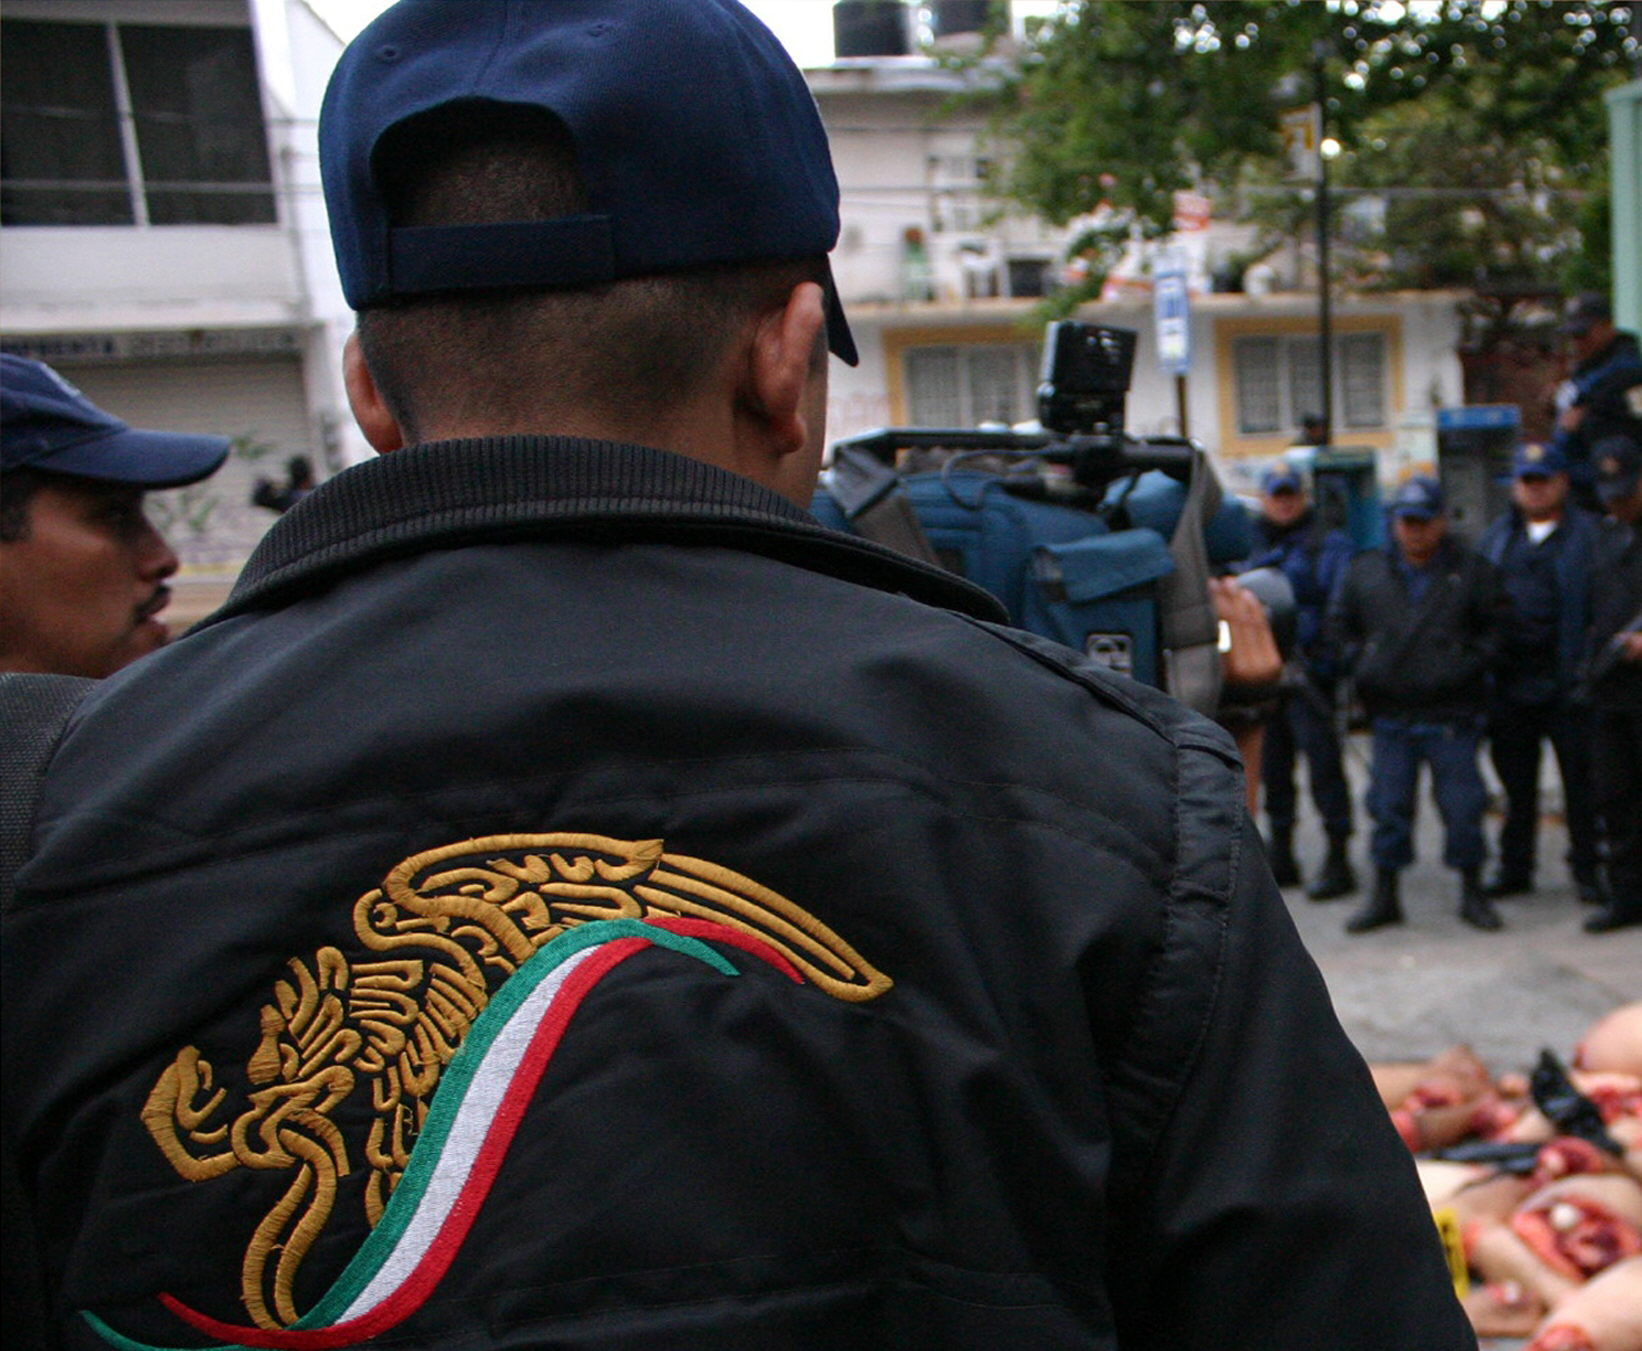 Los implicados serían del batallón 27 con sede en la ciudad de Iguala, estado Guerrero.